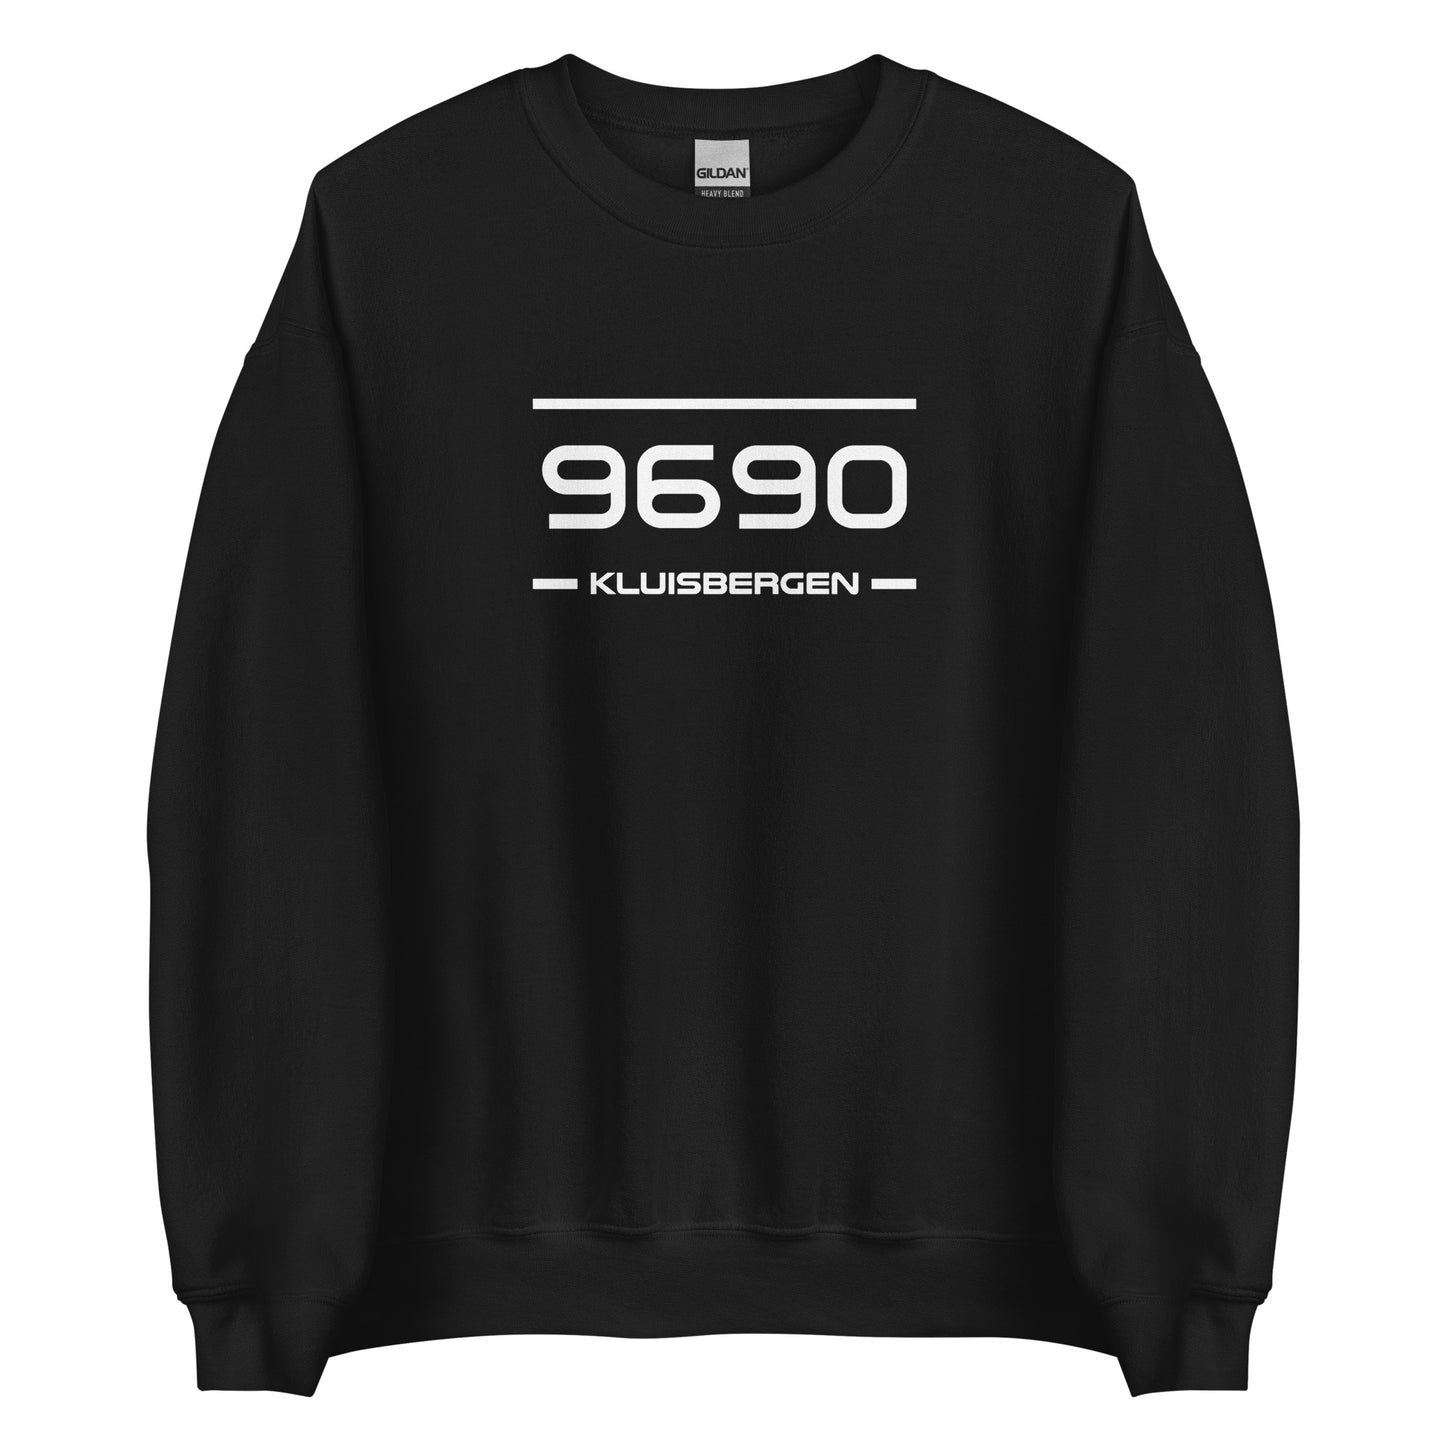 Sweater - 9690 - Kluisbergen (M/V)